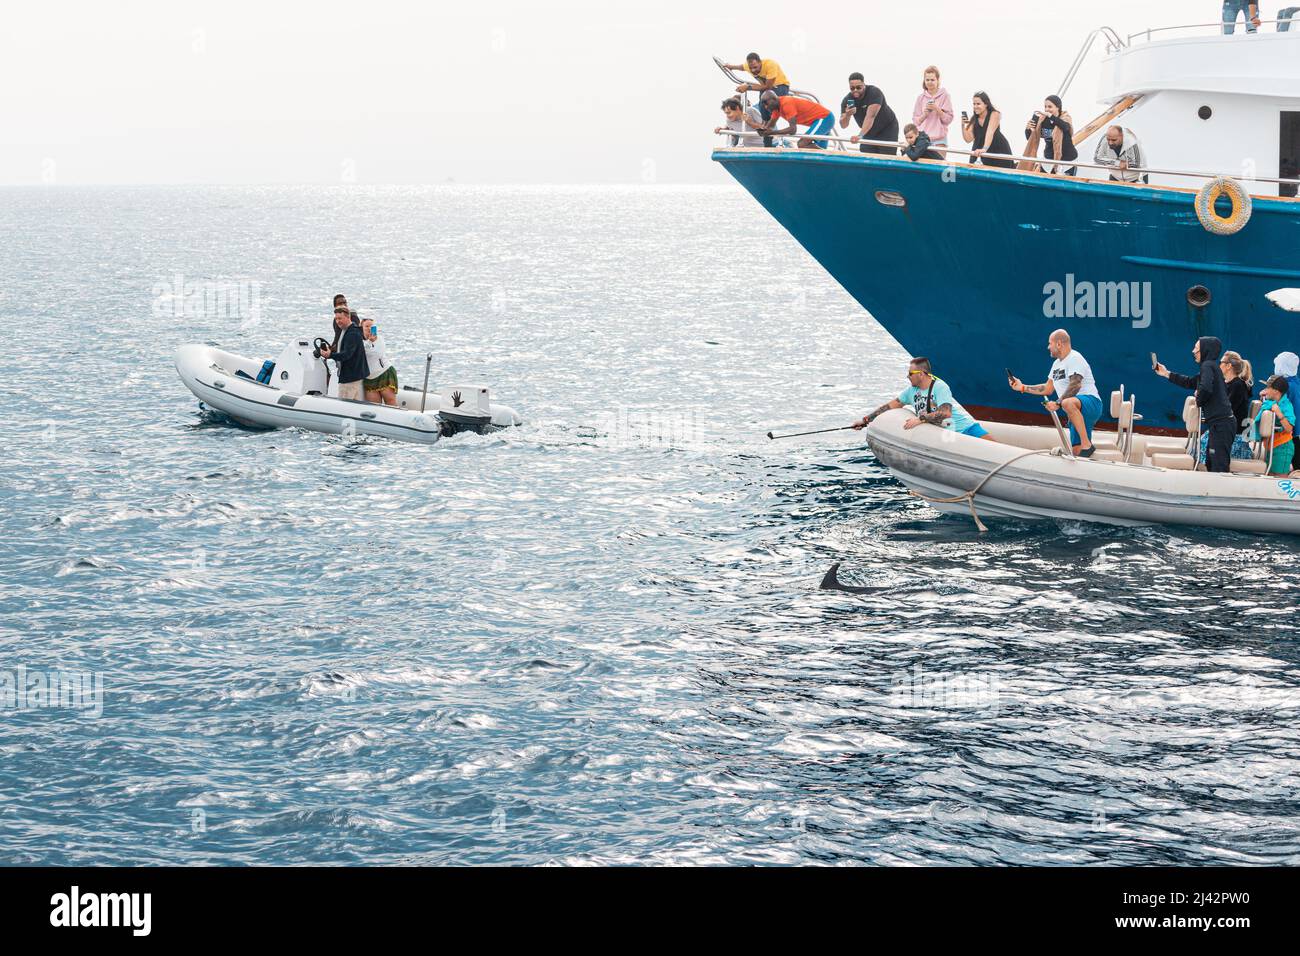 09. Januar 2022, Hurghada, Ägypten: Touristen auf Motorbooten und Kreuzschiffen jagen Delfine oder Wale, um Fotos zu machen Stockfoto